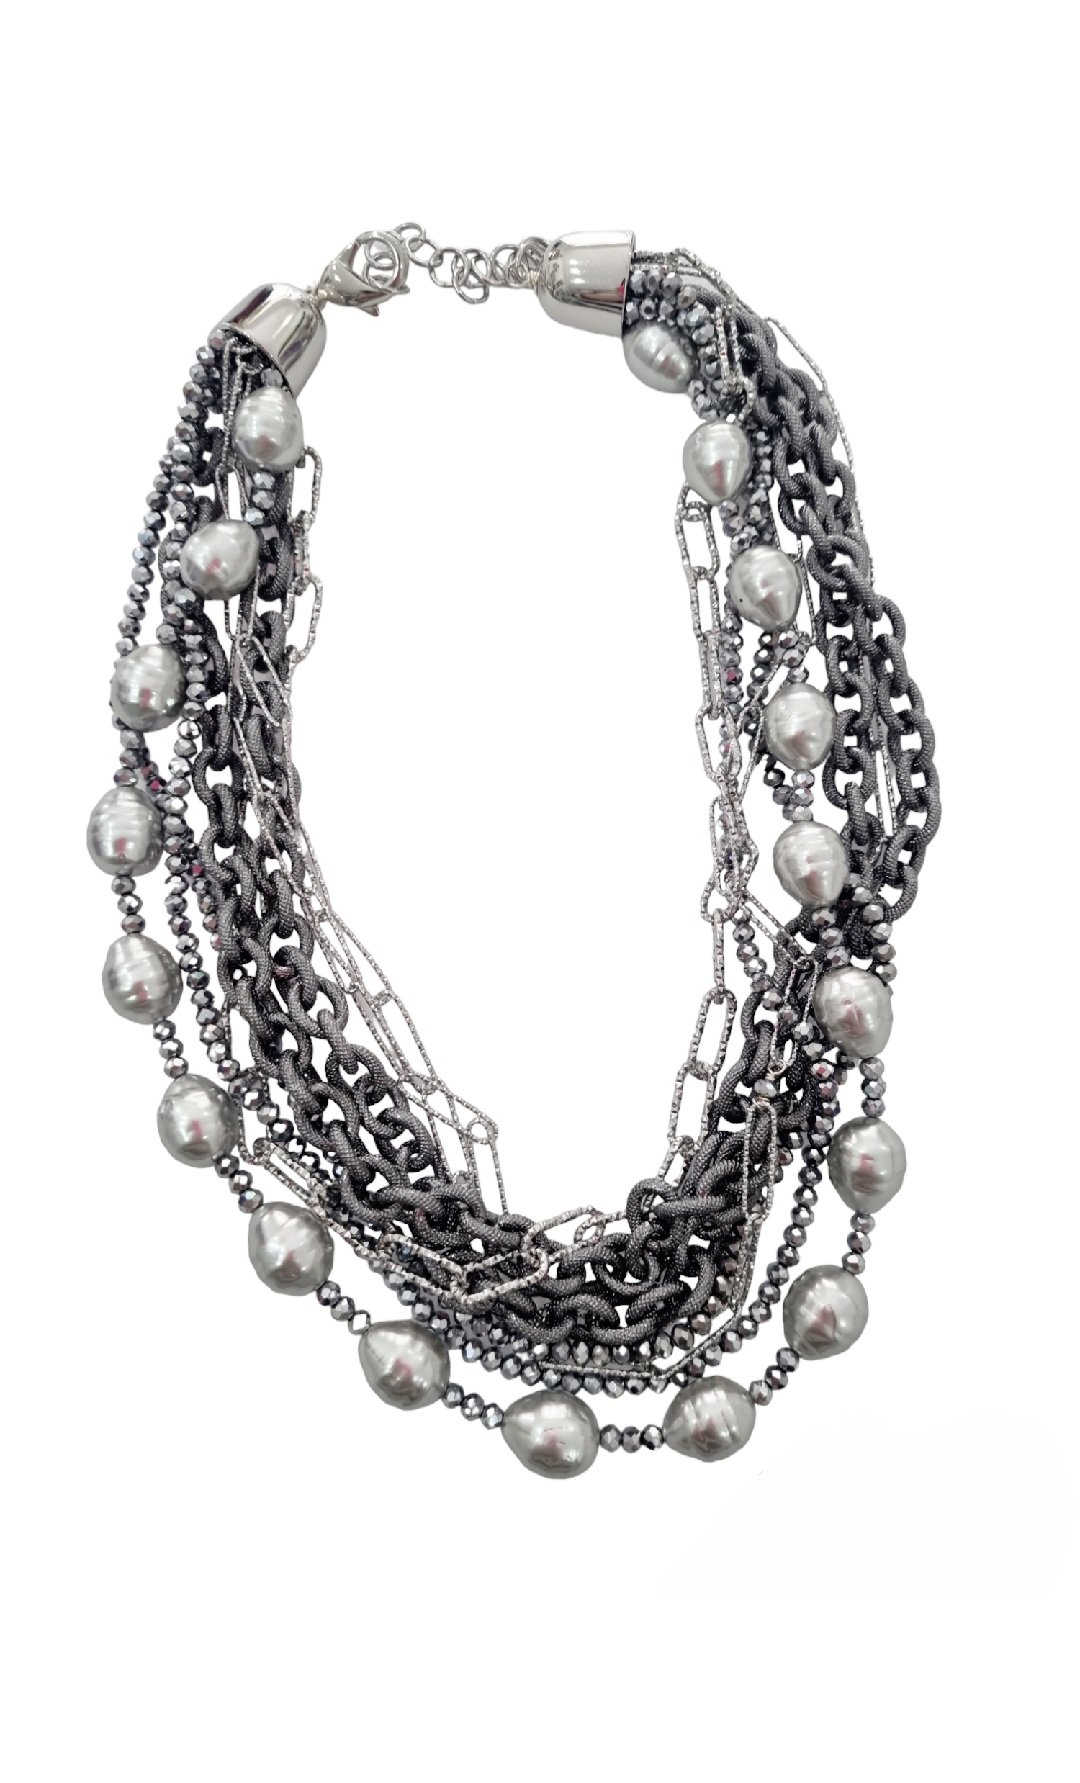 Collana girocollo realizzata  con perle di maioraca grigie, cristalli e catene satinate grigio chiaro e scuro anallergiche .Lunghezza regolabile 58cm